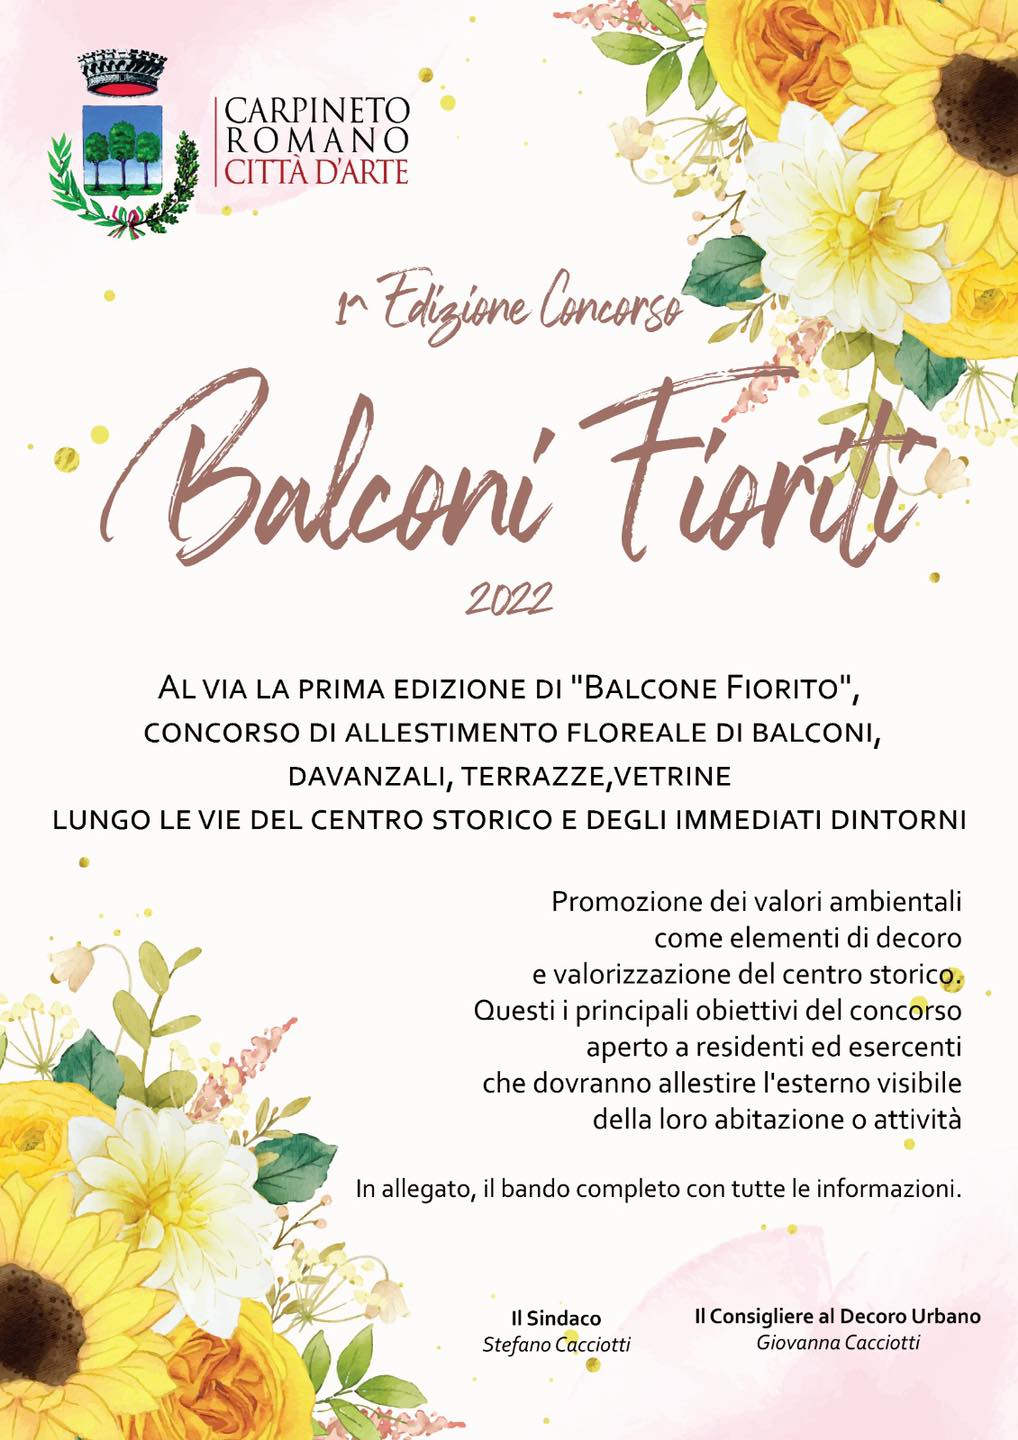 carpineto-1-edizione-concorso-balconi-fioriti-2022